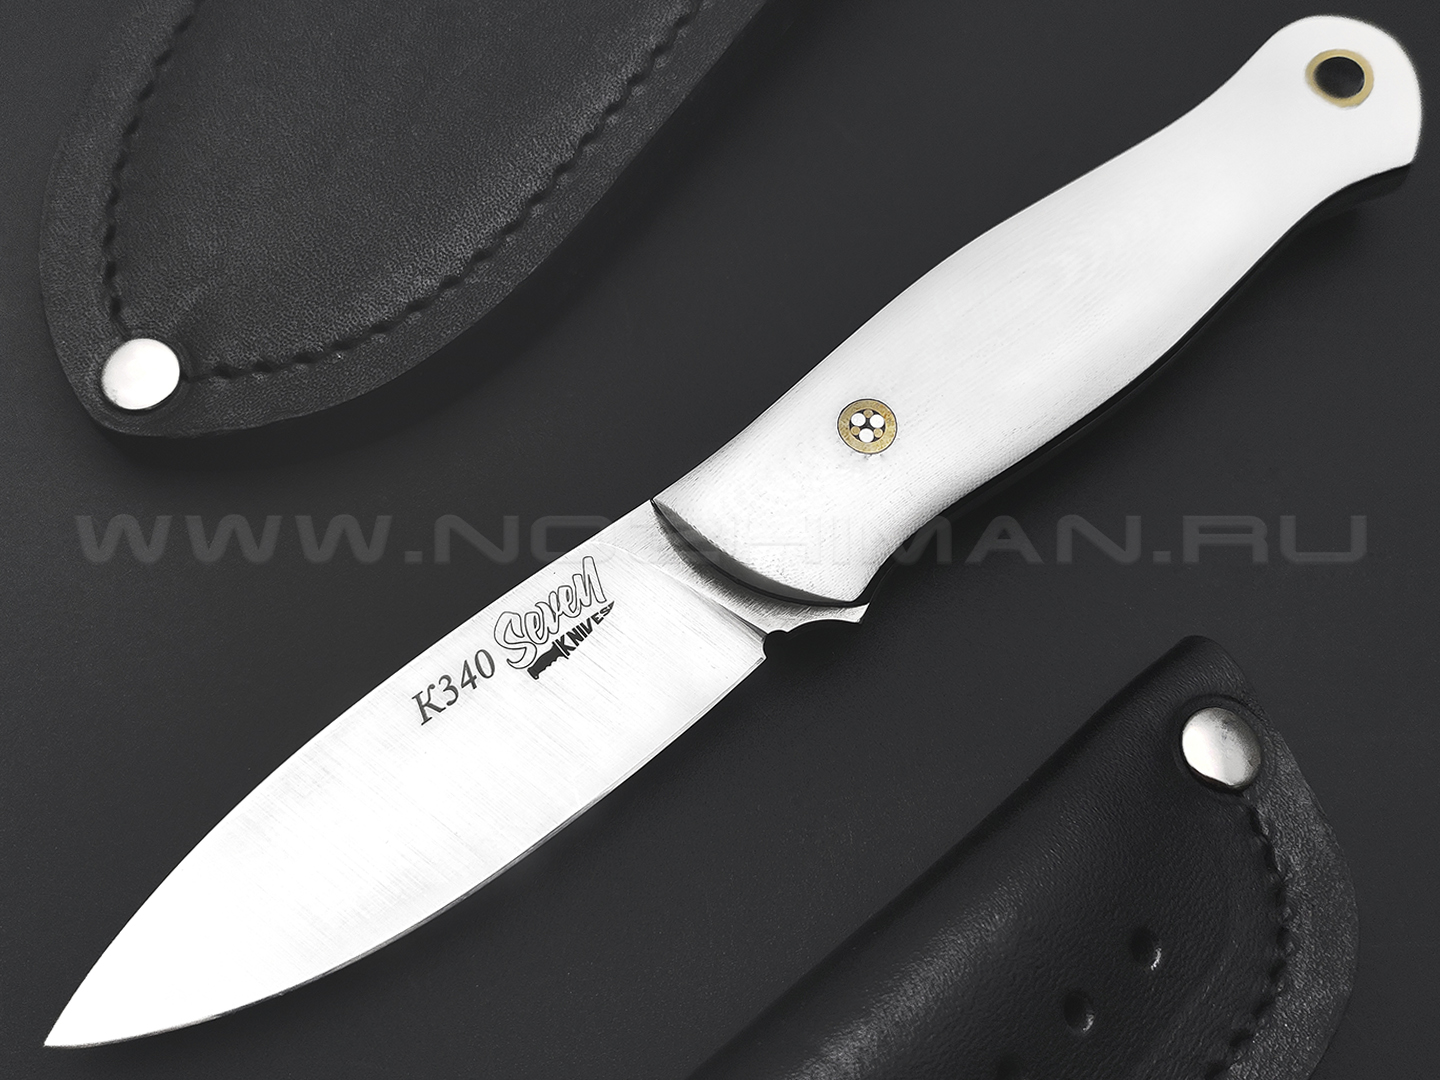 7 ножей нож Колибри сталь K340 satin, рукоять G10 white & black, ножны 2 шт.